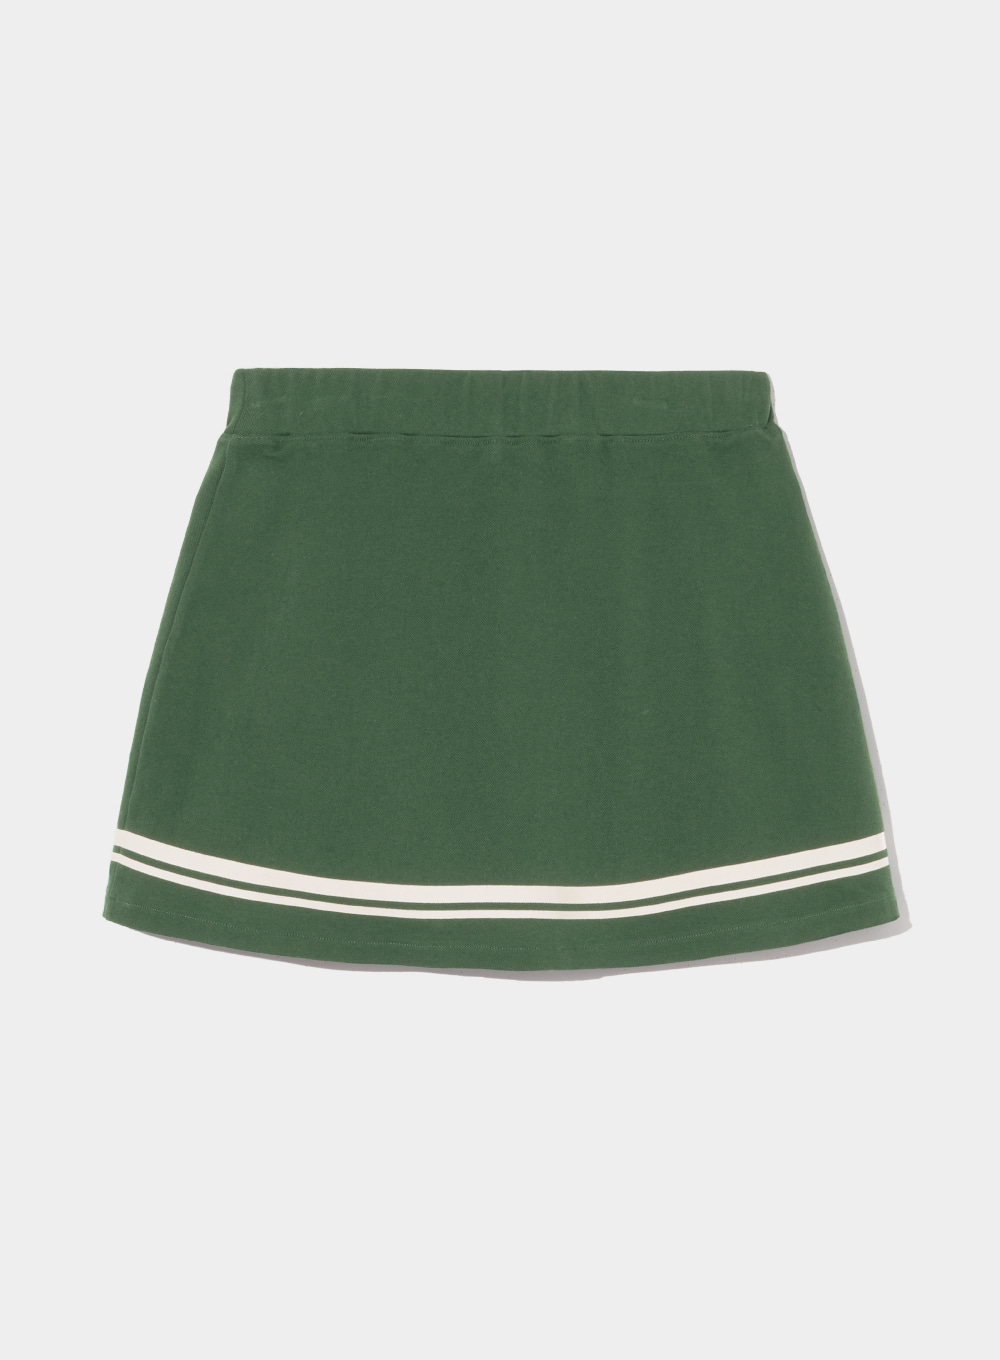 [2월 5일 예약배송][Satur X Diadora] Woman Pleated Tennis Skirt - Green Ivory